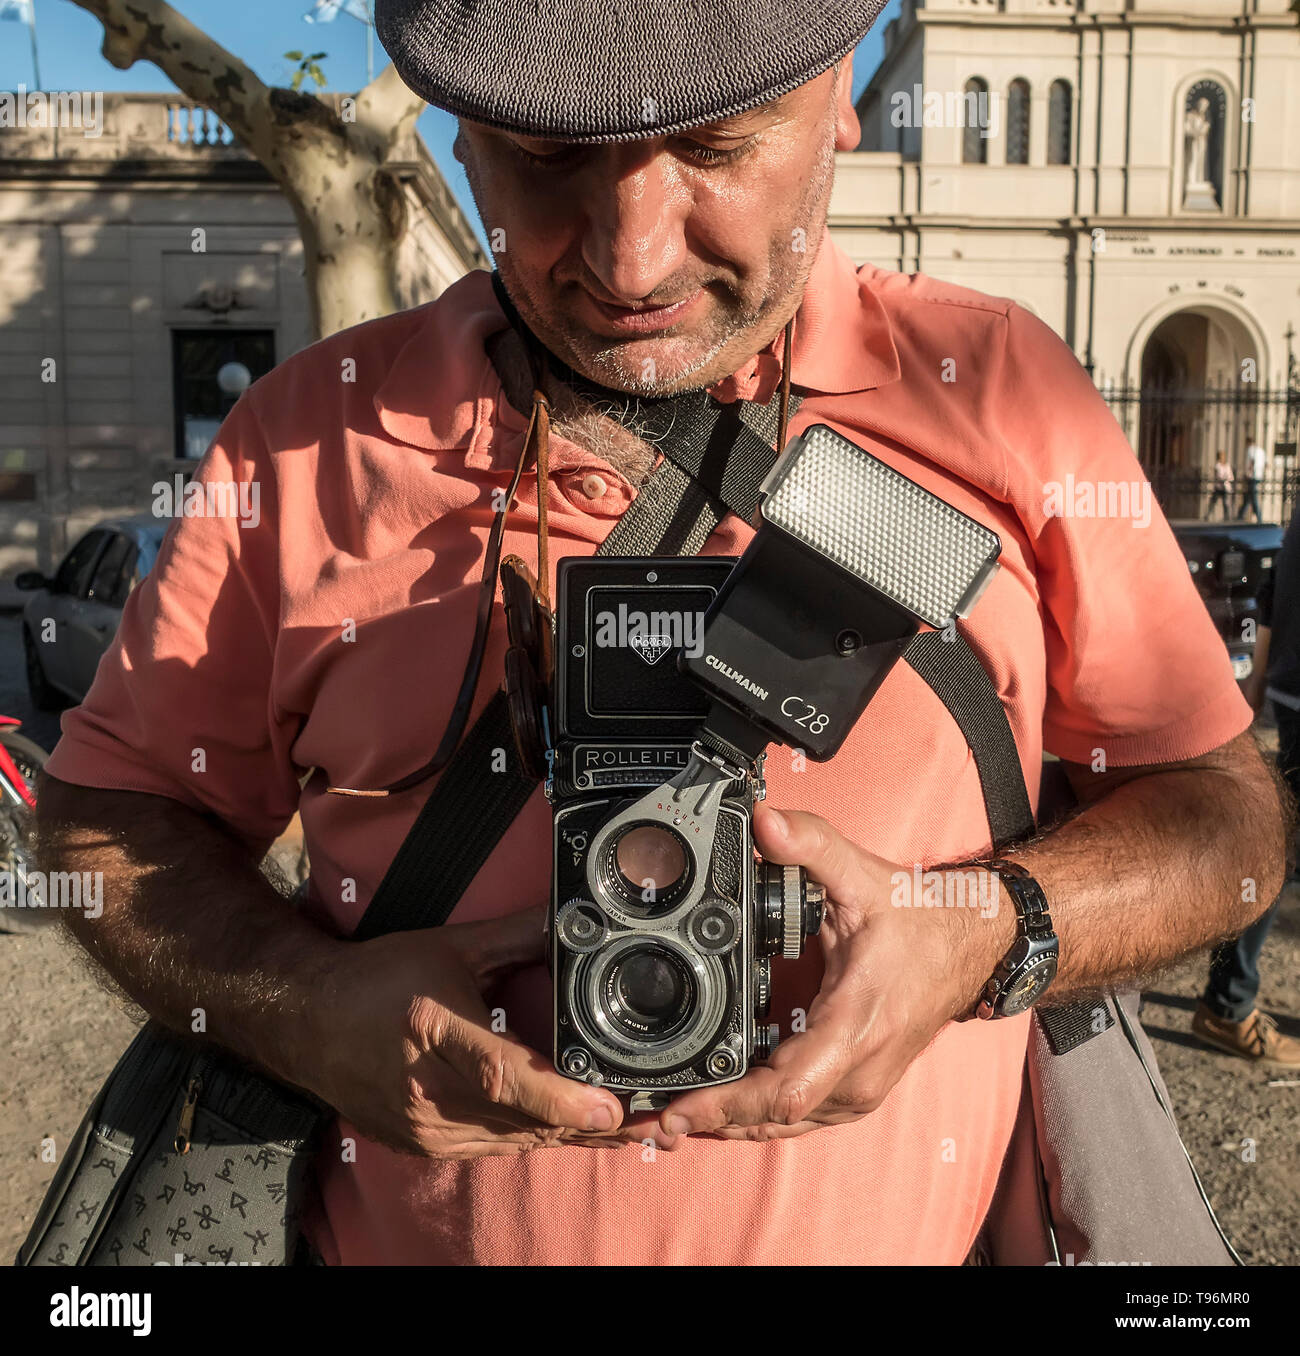 Uomo che usa una telecamera analogica a doppio riflesso Foto Stock